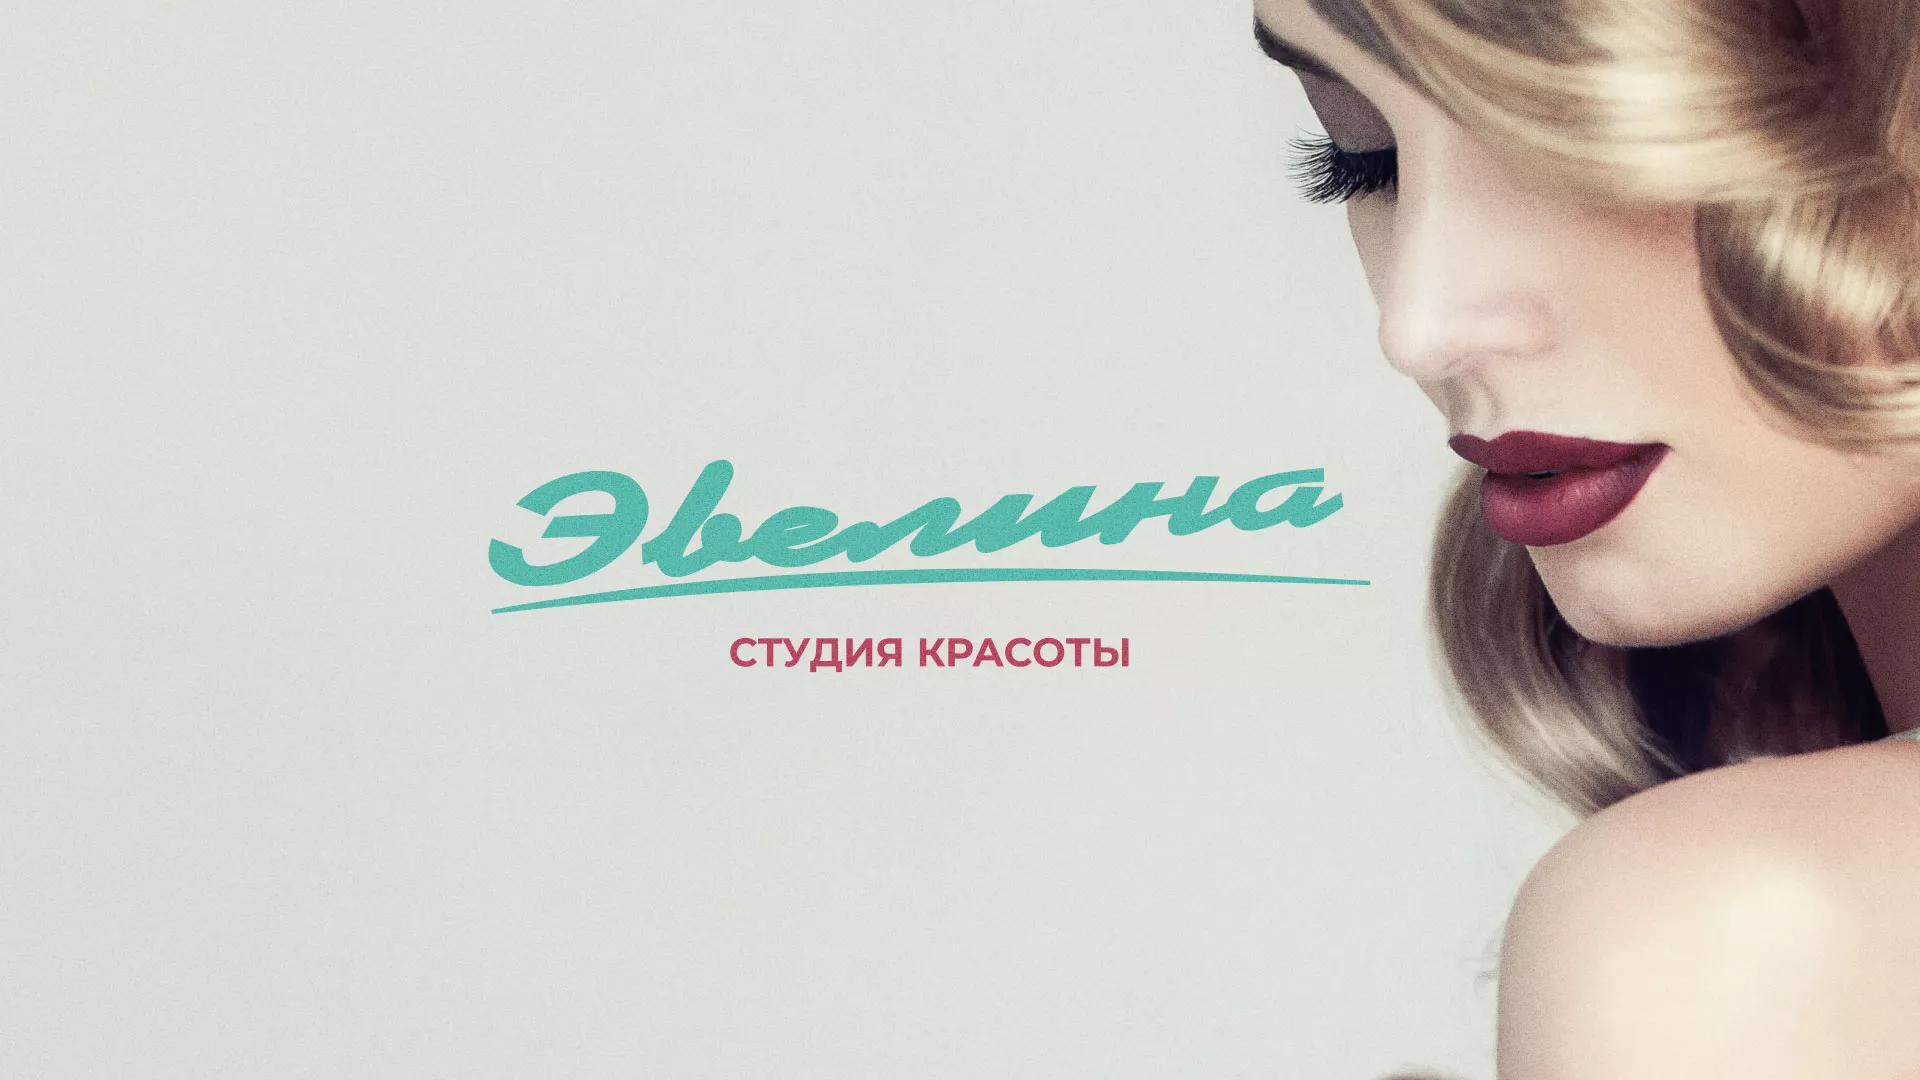 Разработка сайта для салона красоты «Эвелина» в Николаевске-на-Амуре